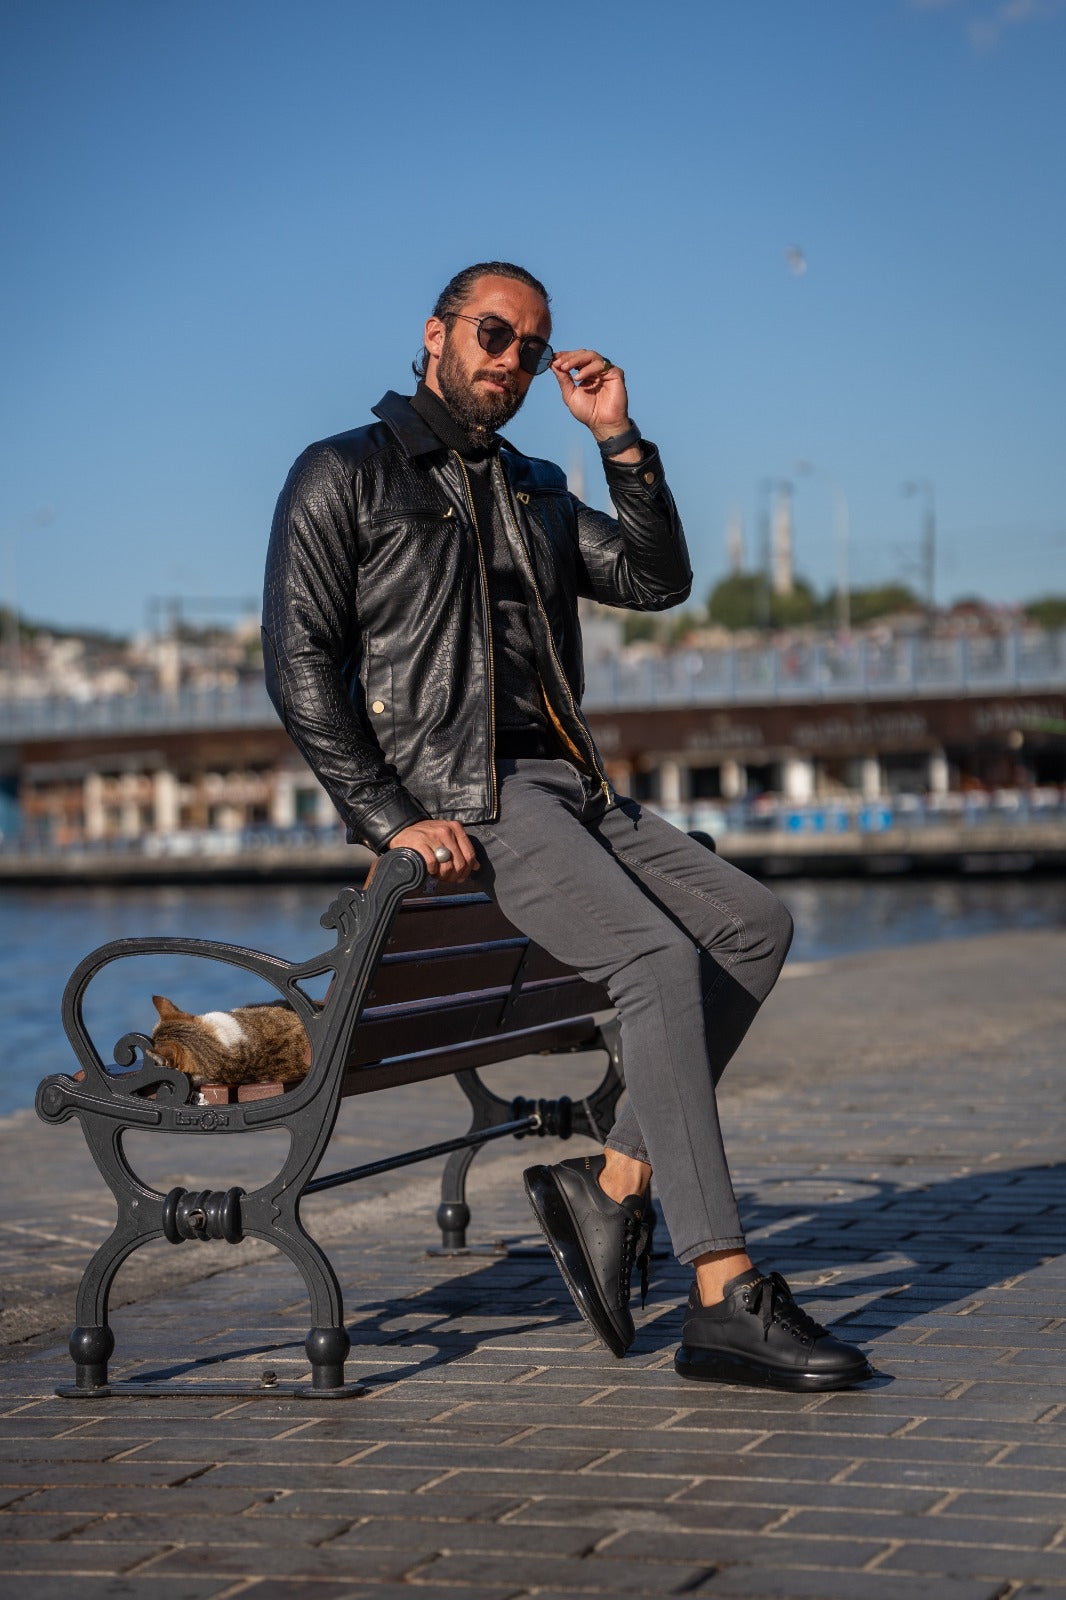 Paris Black Slim Fit Zipper Leather Jacket